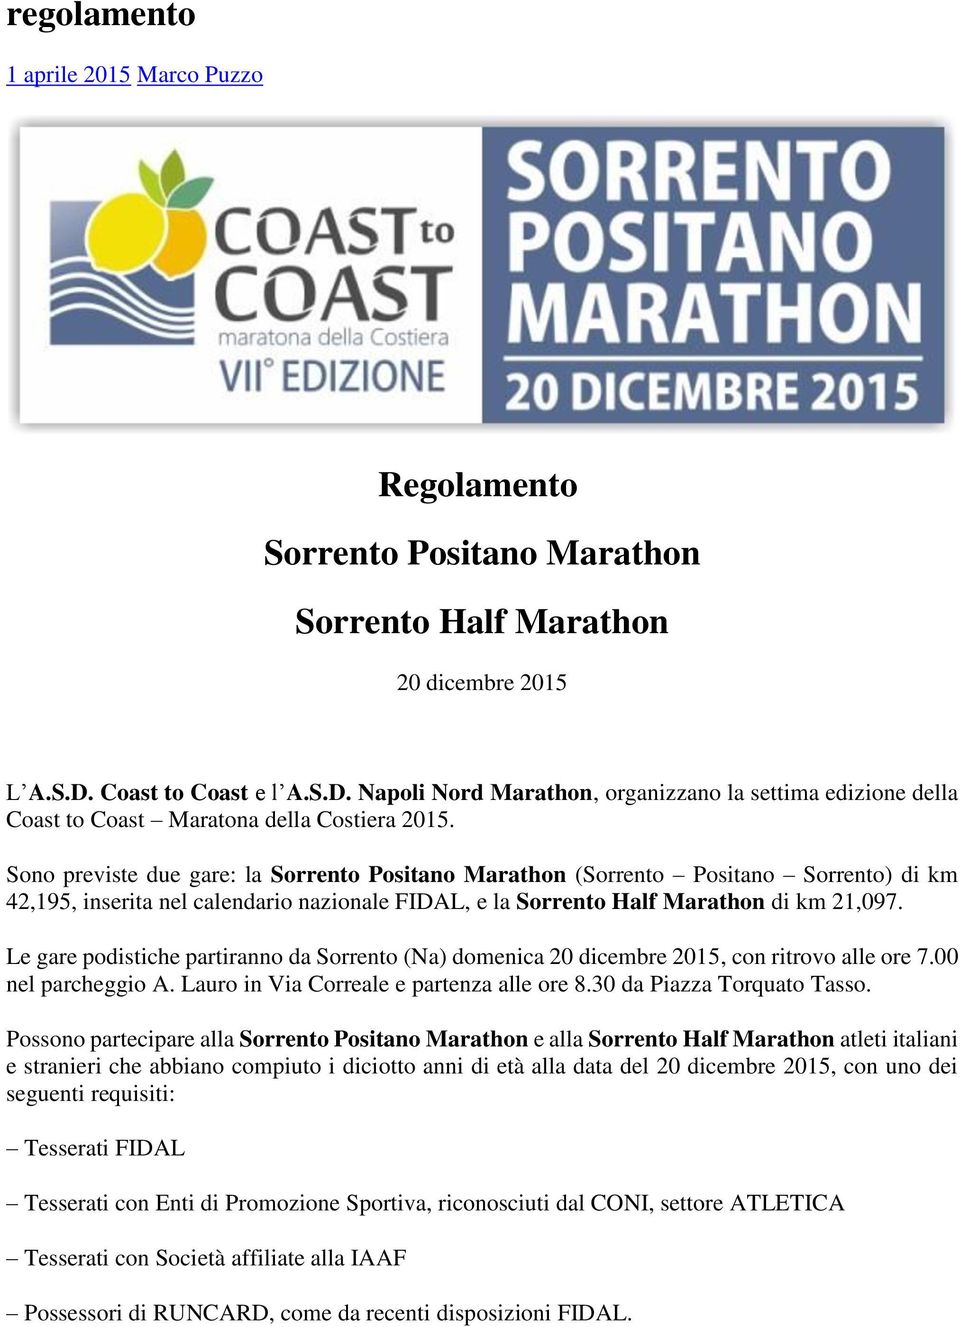 Sono previste due gare: la Sorrento Positano Marathon (Sorrento Positano Sorrento) di km 42,195, inserita nel calendario nazionale FIDAL, e la Sorrento Half Marathon di km 21,097.